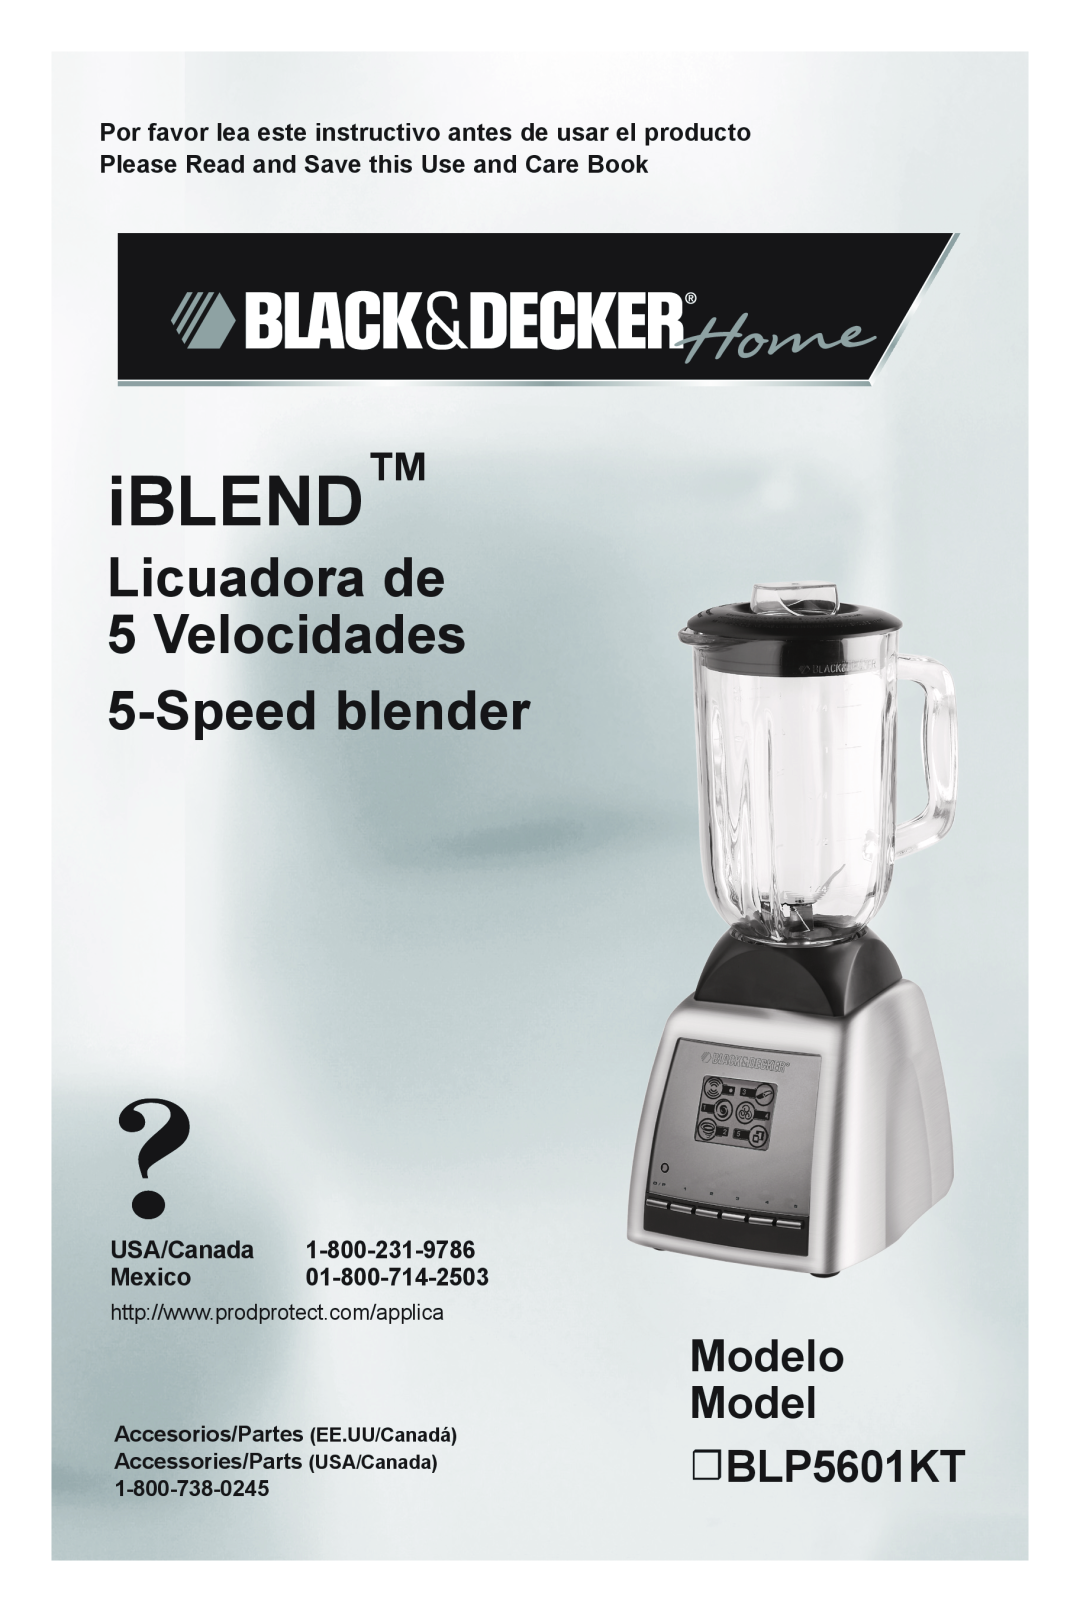 Black & Decker manual Licuadora de 5 Velocidades 5-Speed blender, Modelo Model BLP5601KT, iBLEND, USA/Canada Mexico 